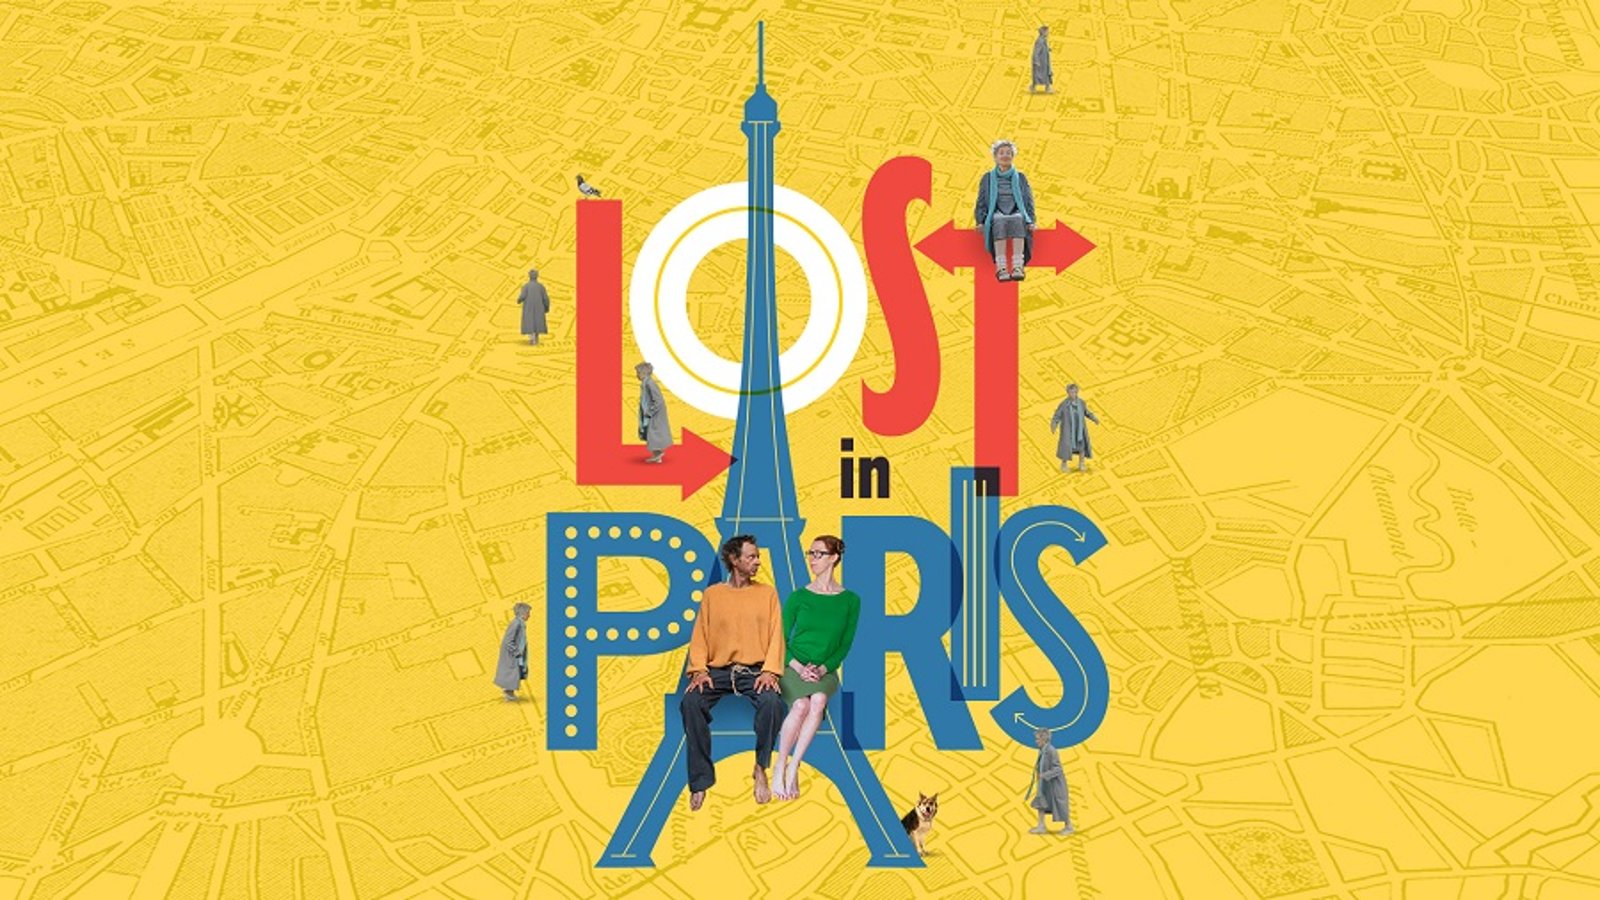 Lost In Paris - Paris pieds nus